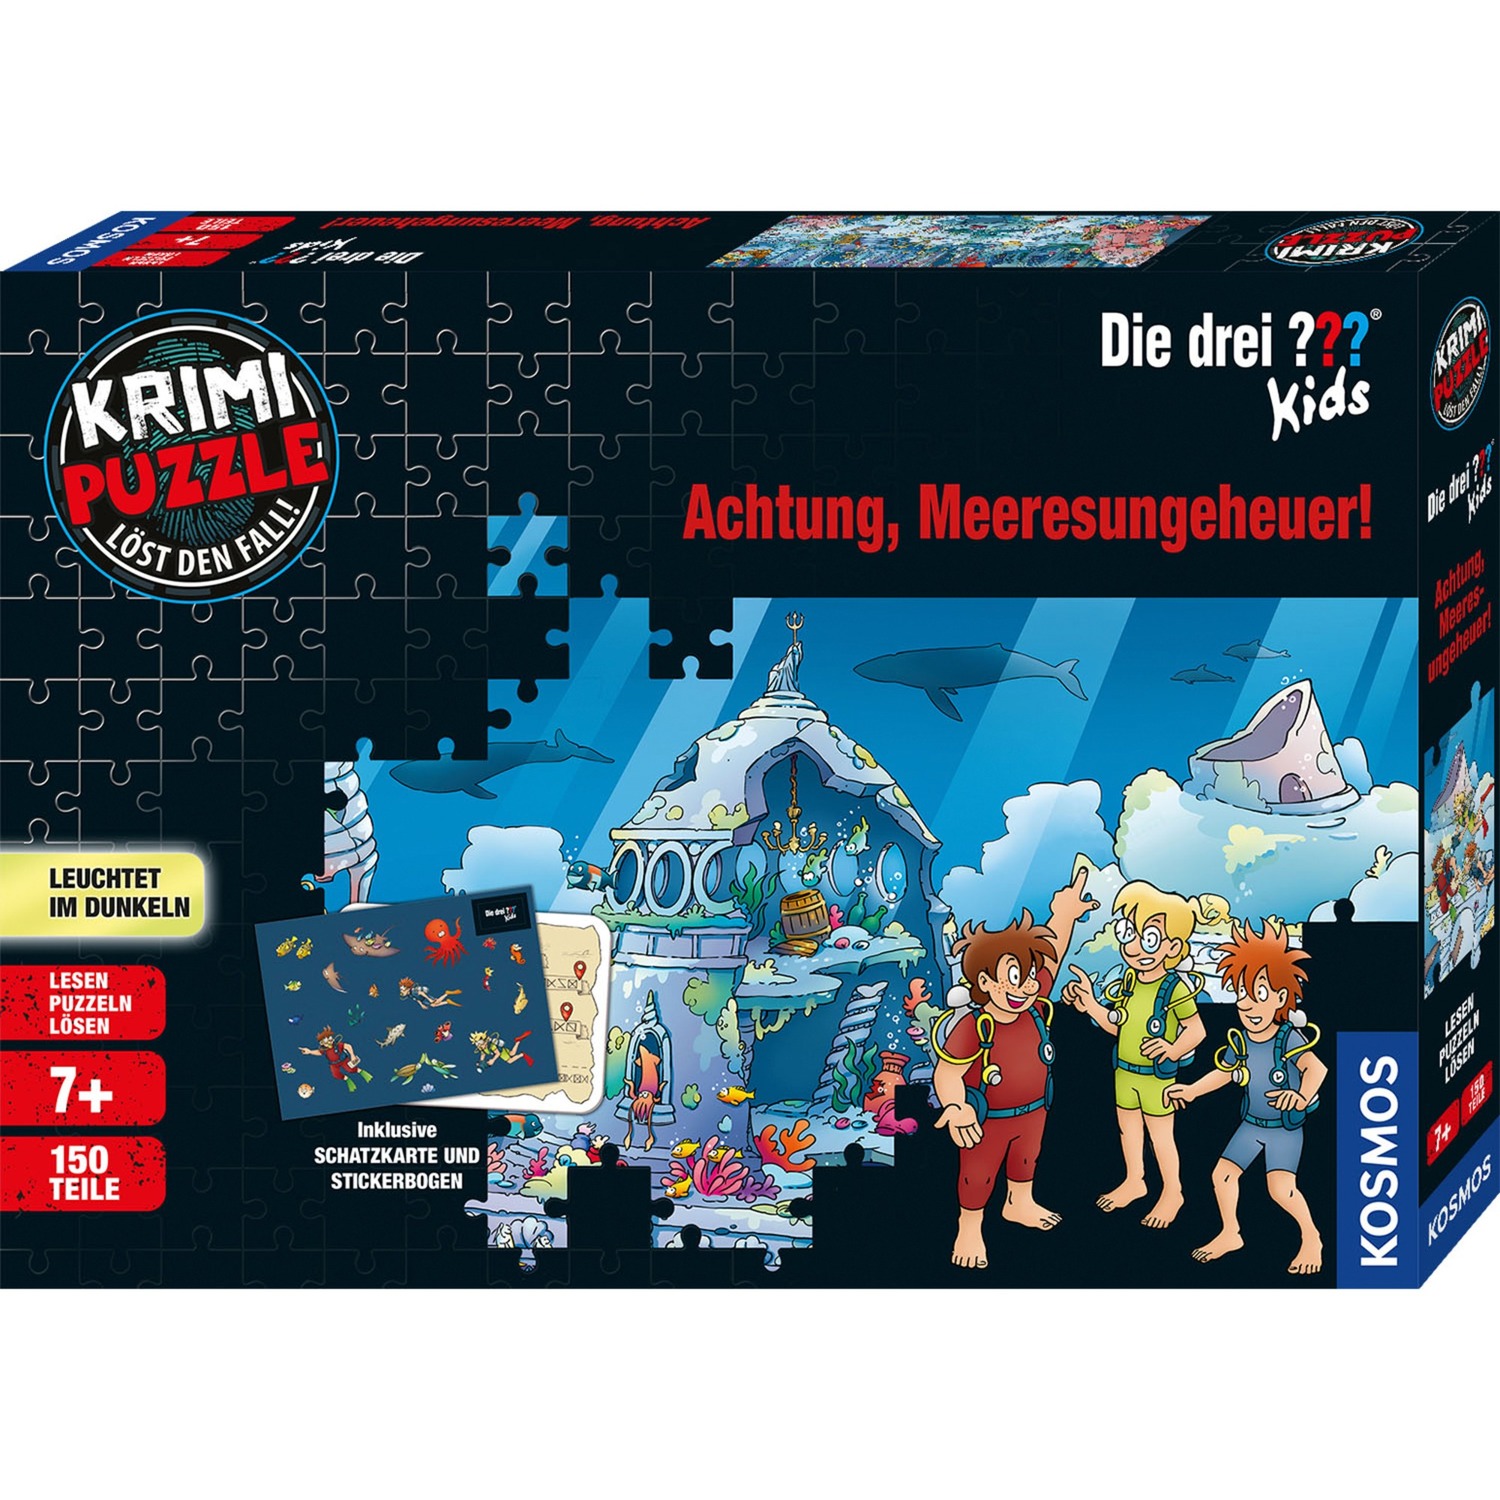 Image of Alternate - Krimi-Puzzle: Die drei ??? Kids - Achtung, Meeresungeheuer! online einkaufen bei Alternate